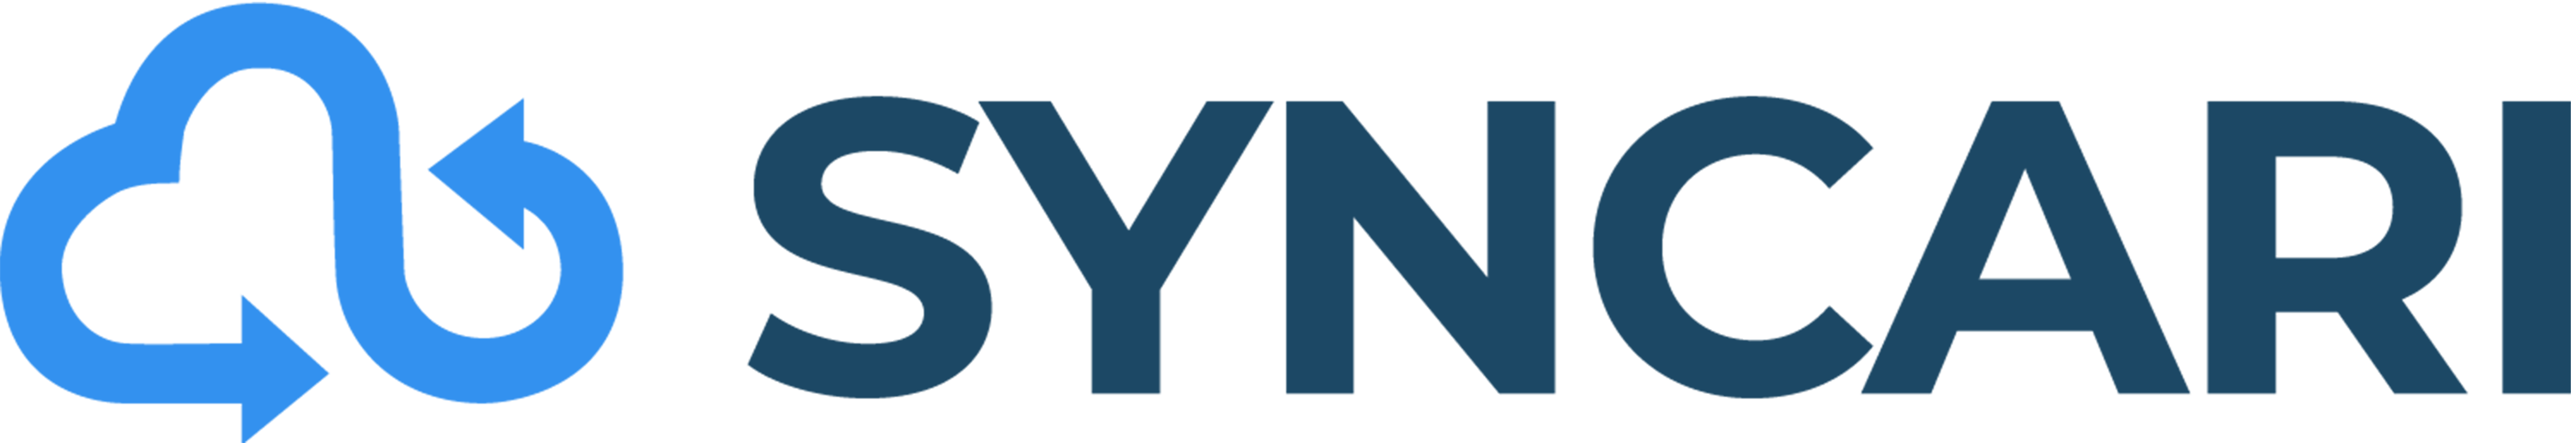 Syncari logo